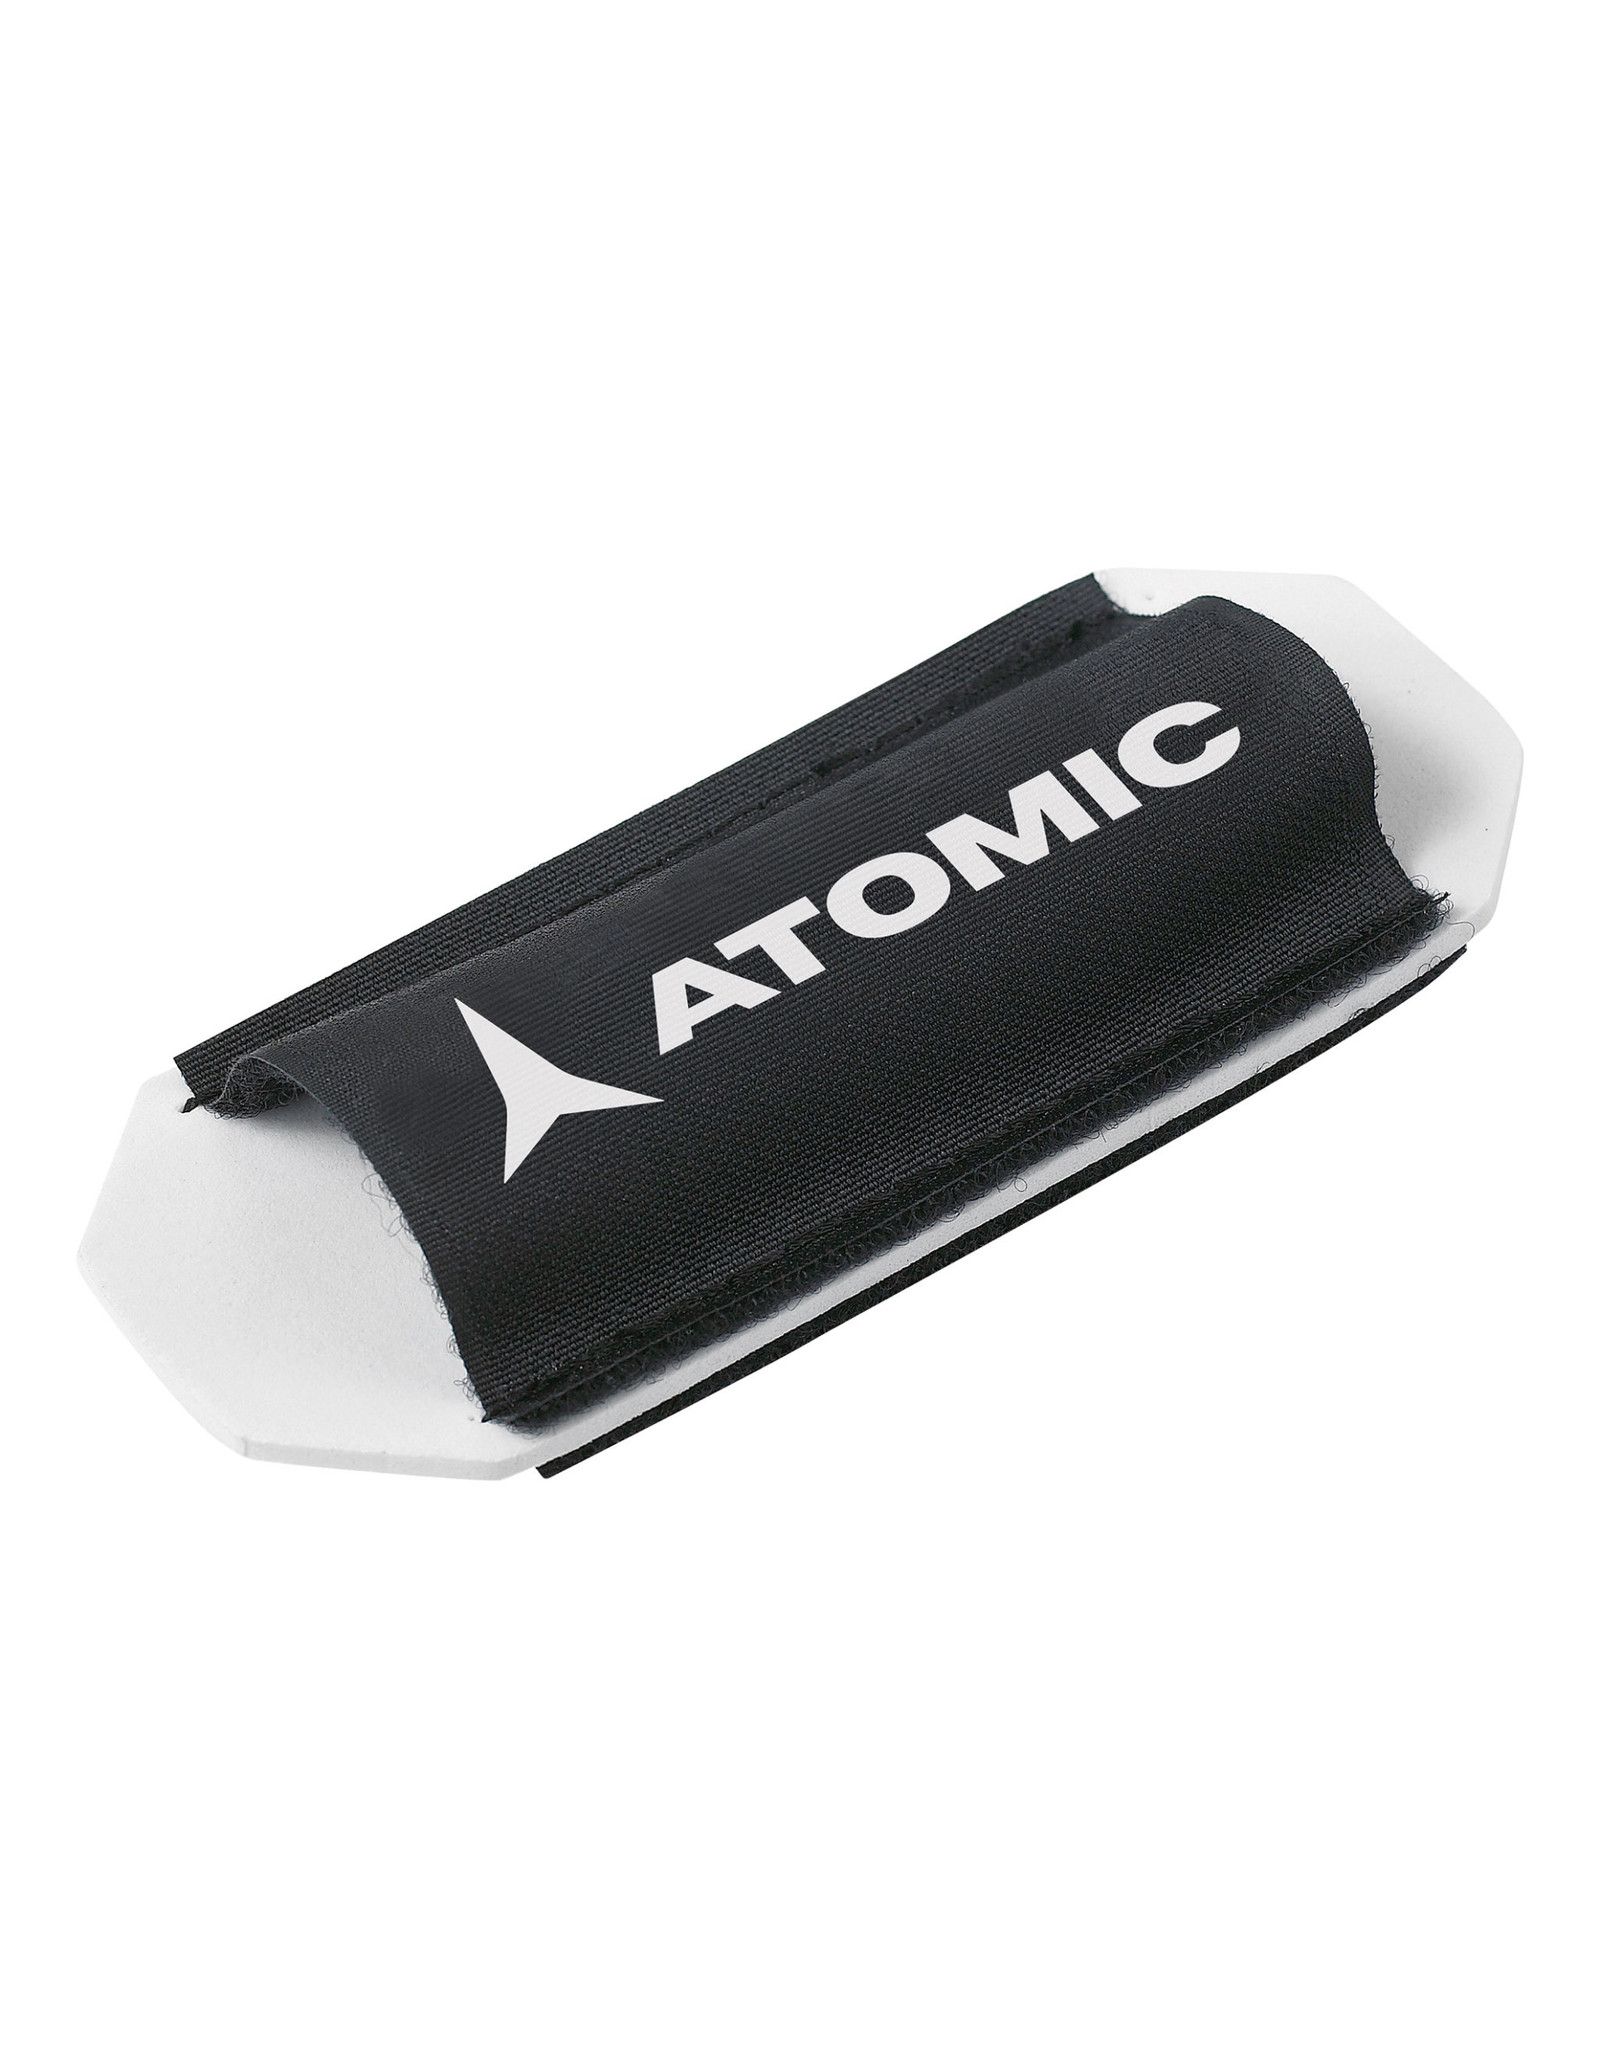 Atomic Atomic Ski Tie 10-Pack